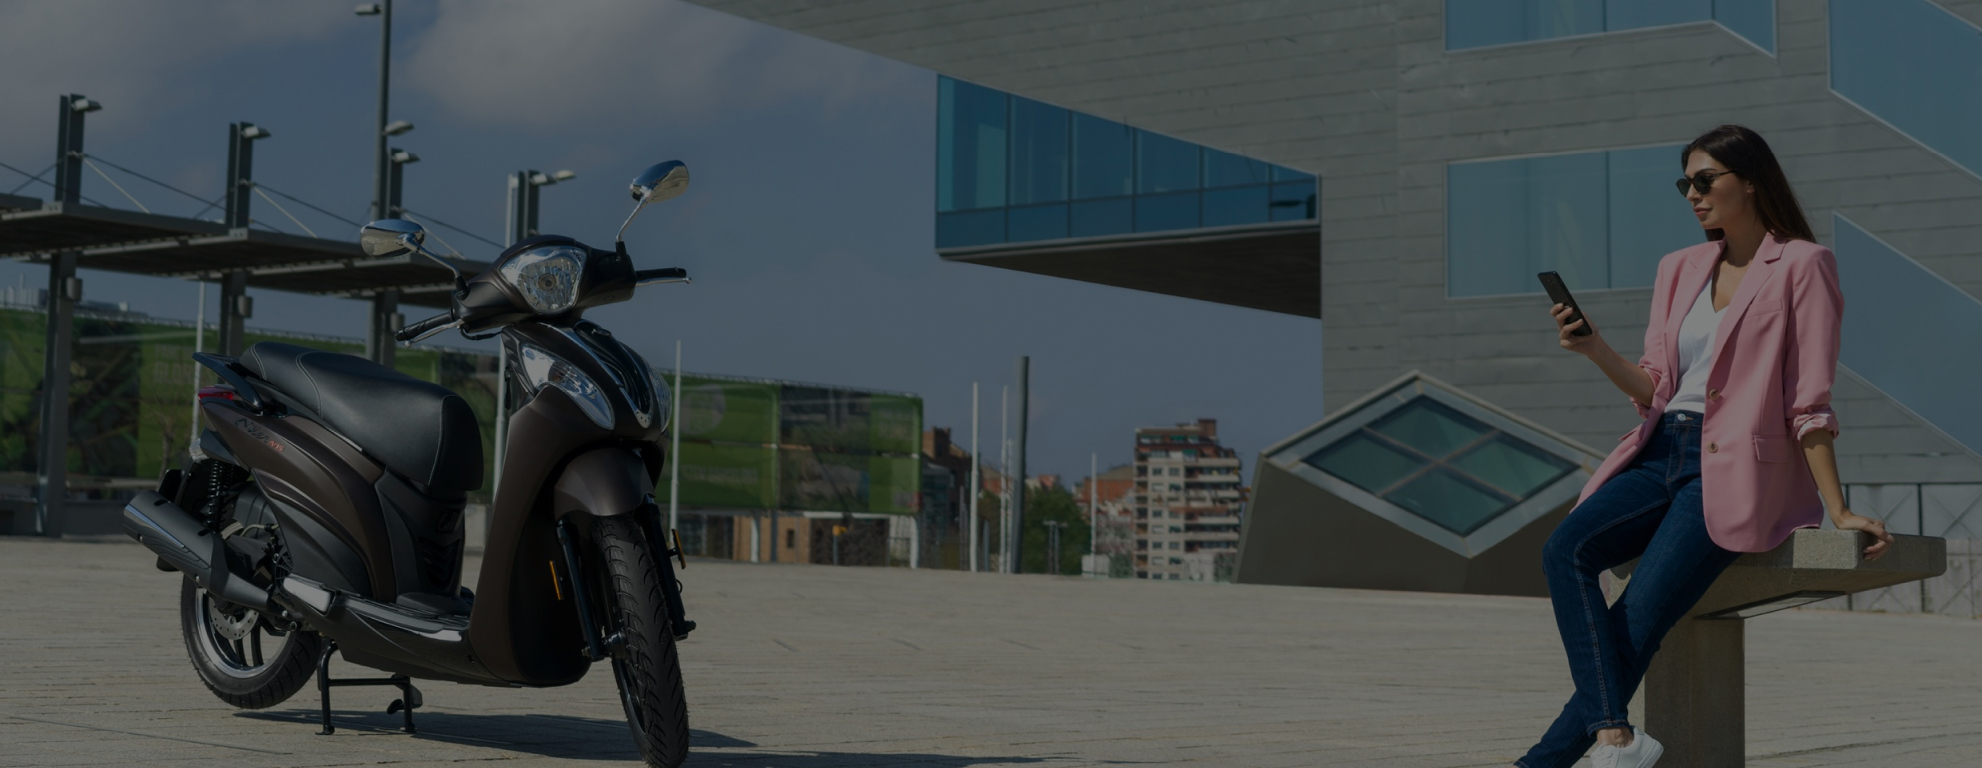 SAT oficial para la venta y reparación de motos Kymco en Hospitalet de Llobregat y Barcelona